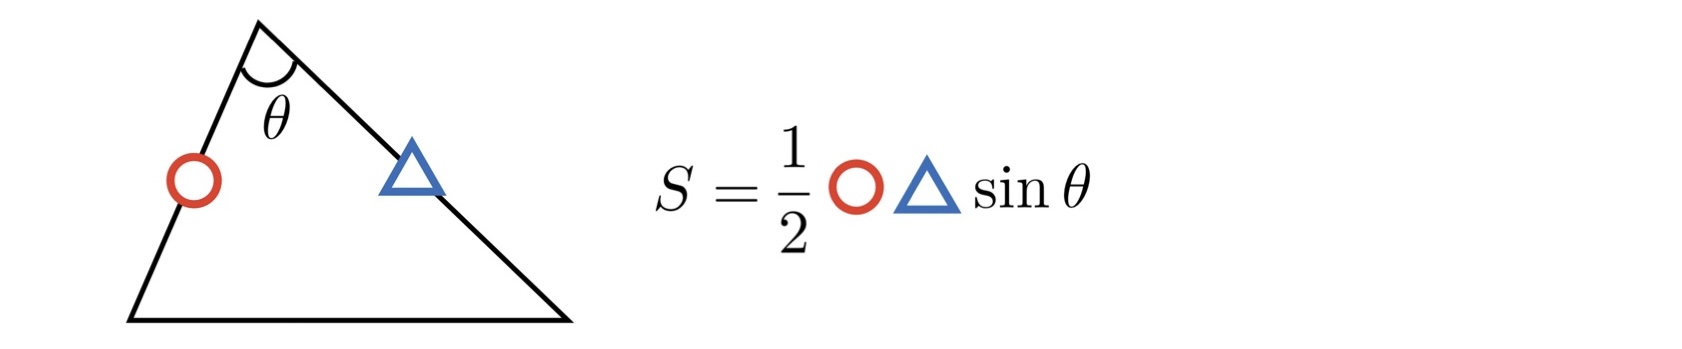 三角形の面積(2辺) 公式